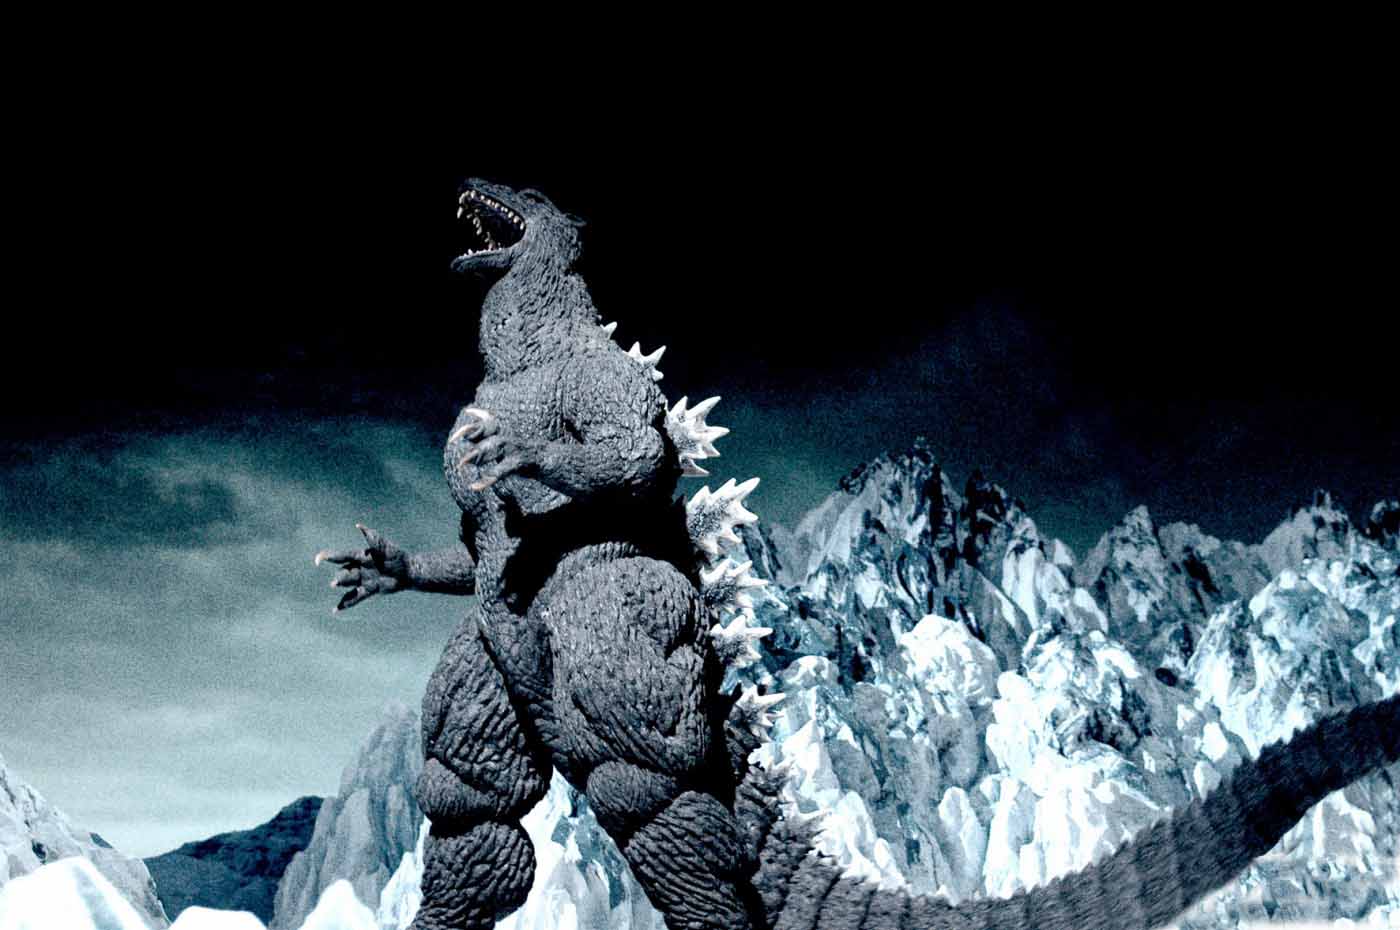 Final_Wars_Godzilla